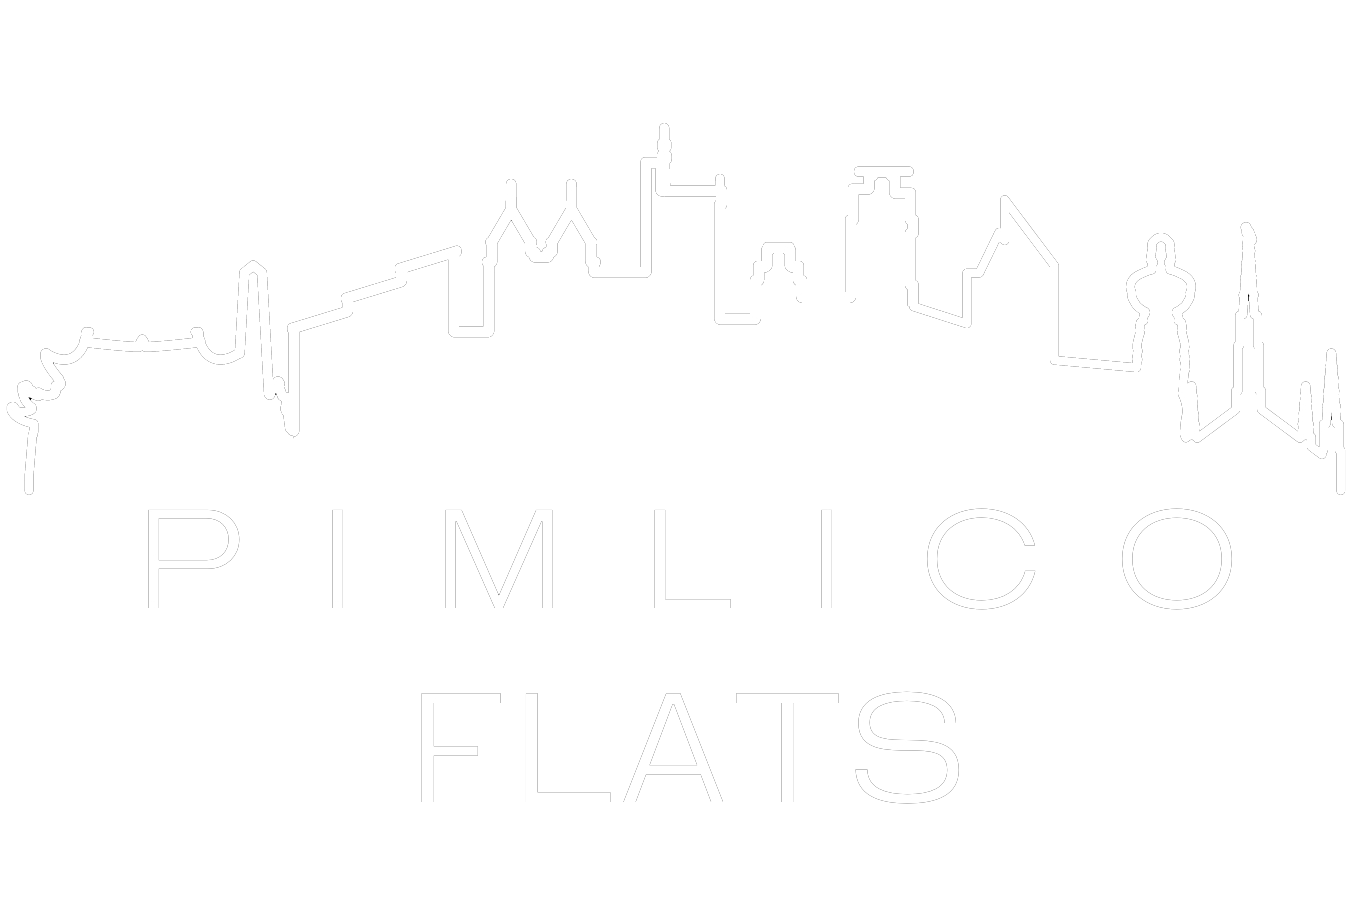 Pimlico Flats